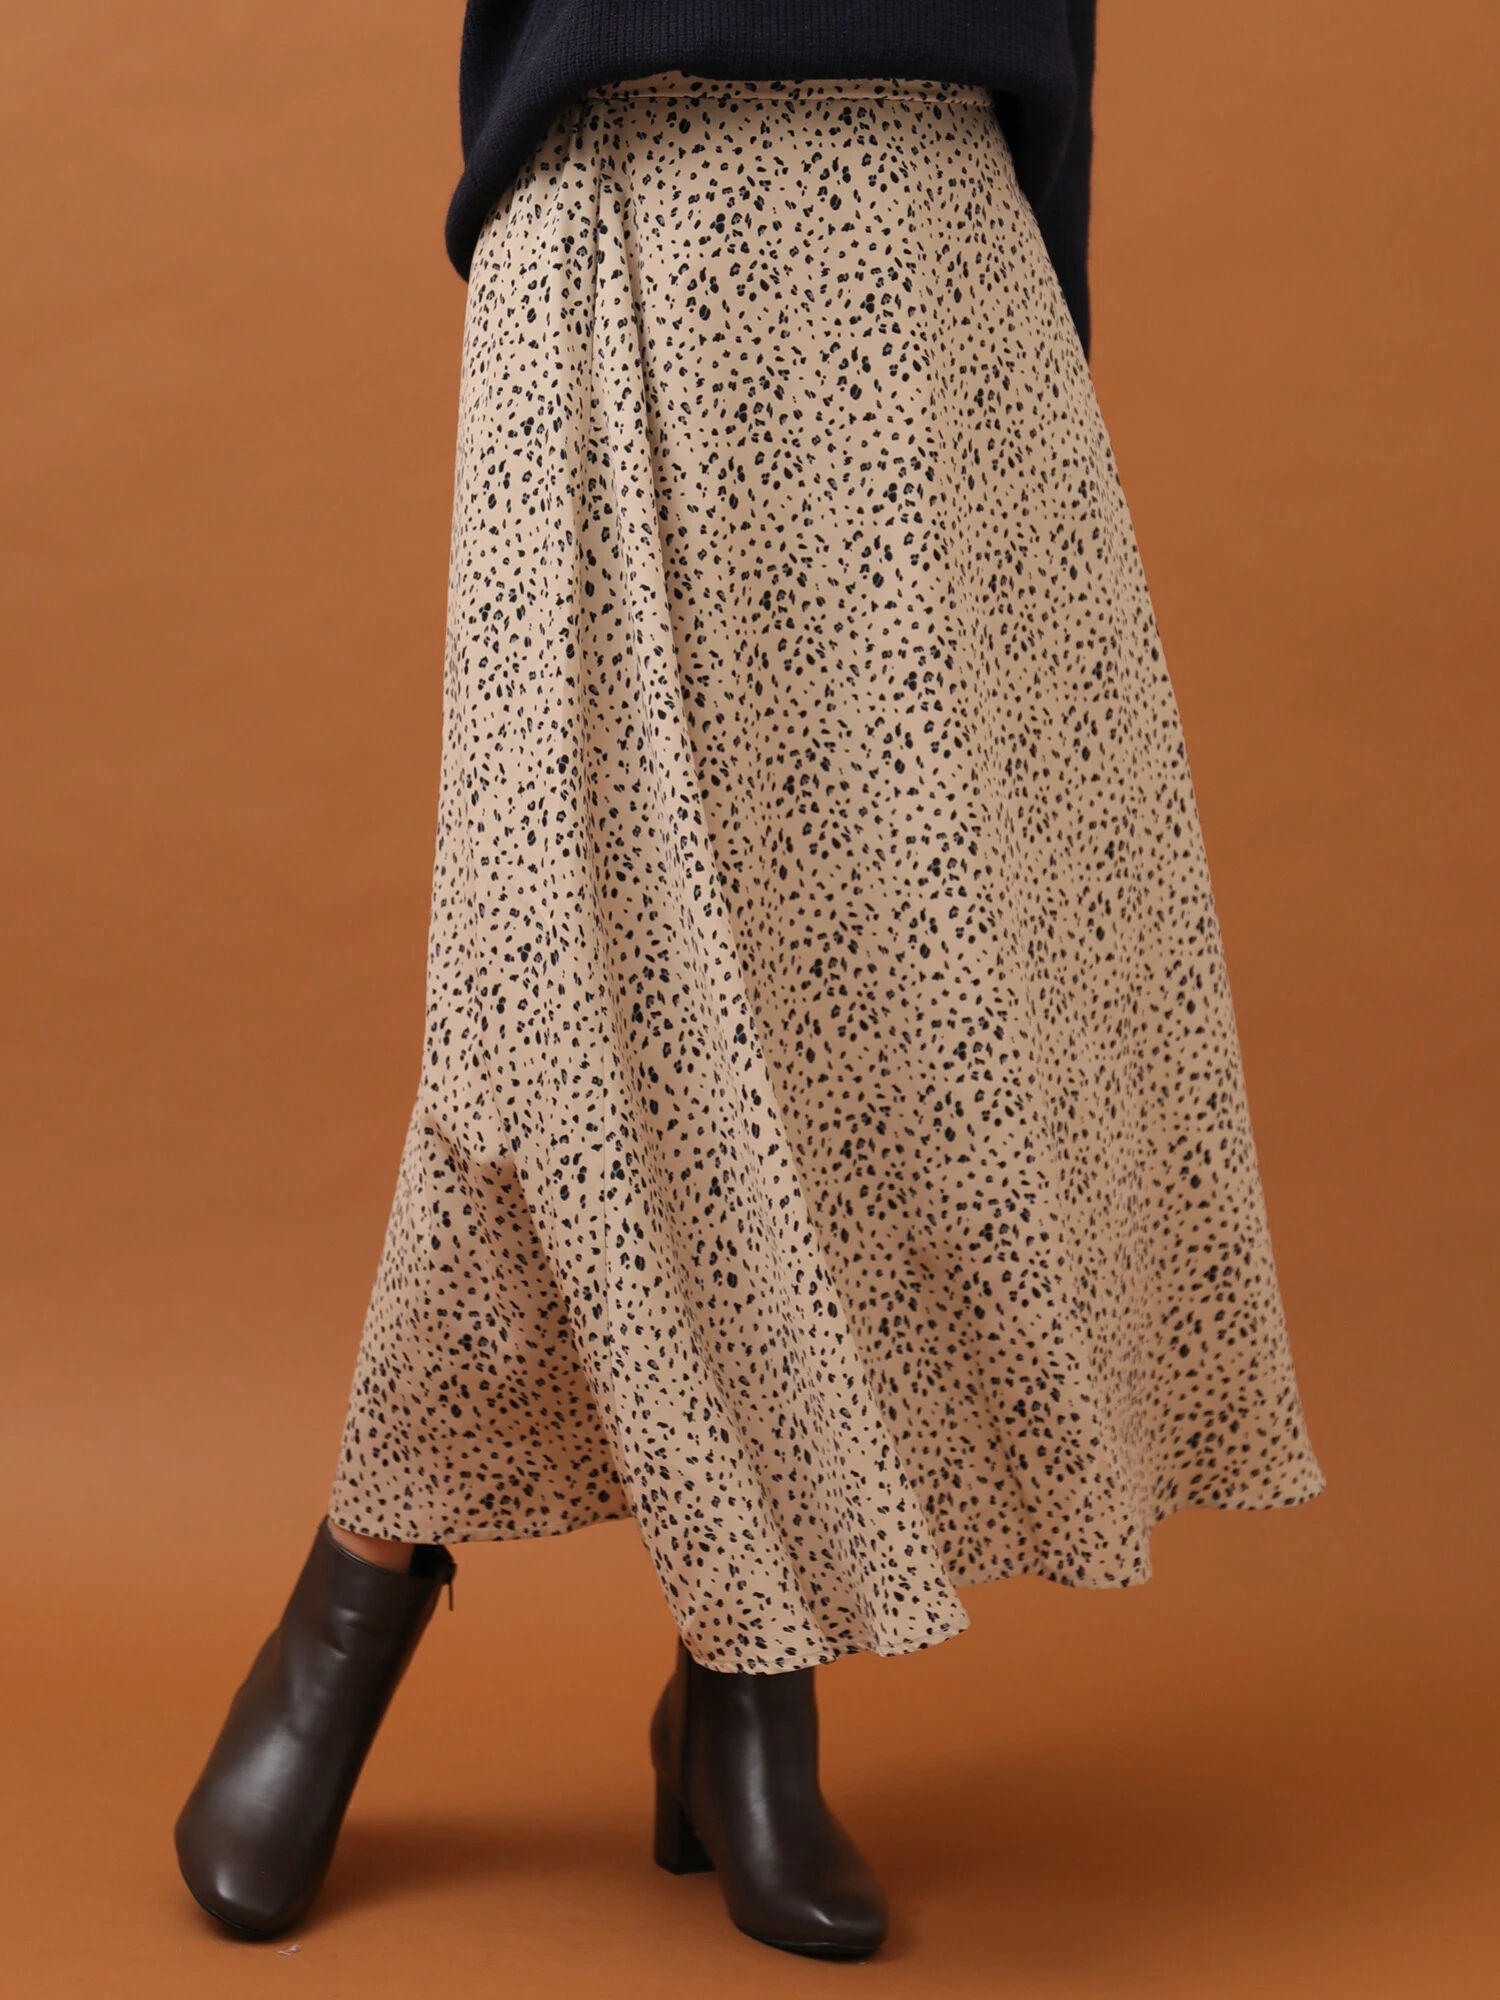 【未使用品タグ付き】MINKPINK レオパード柄デザインスカート